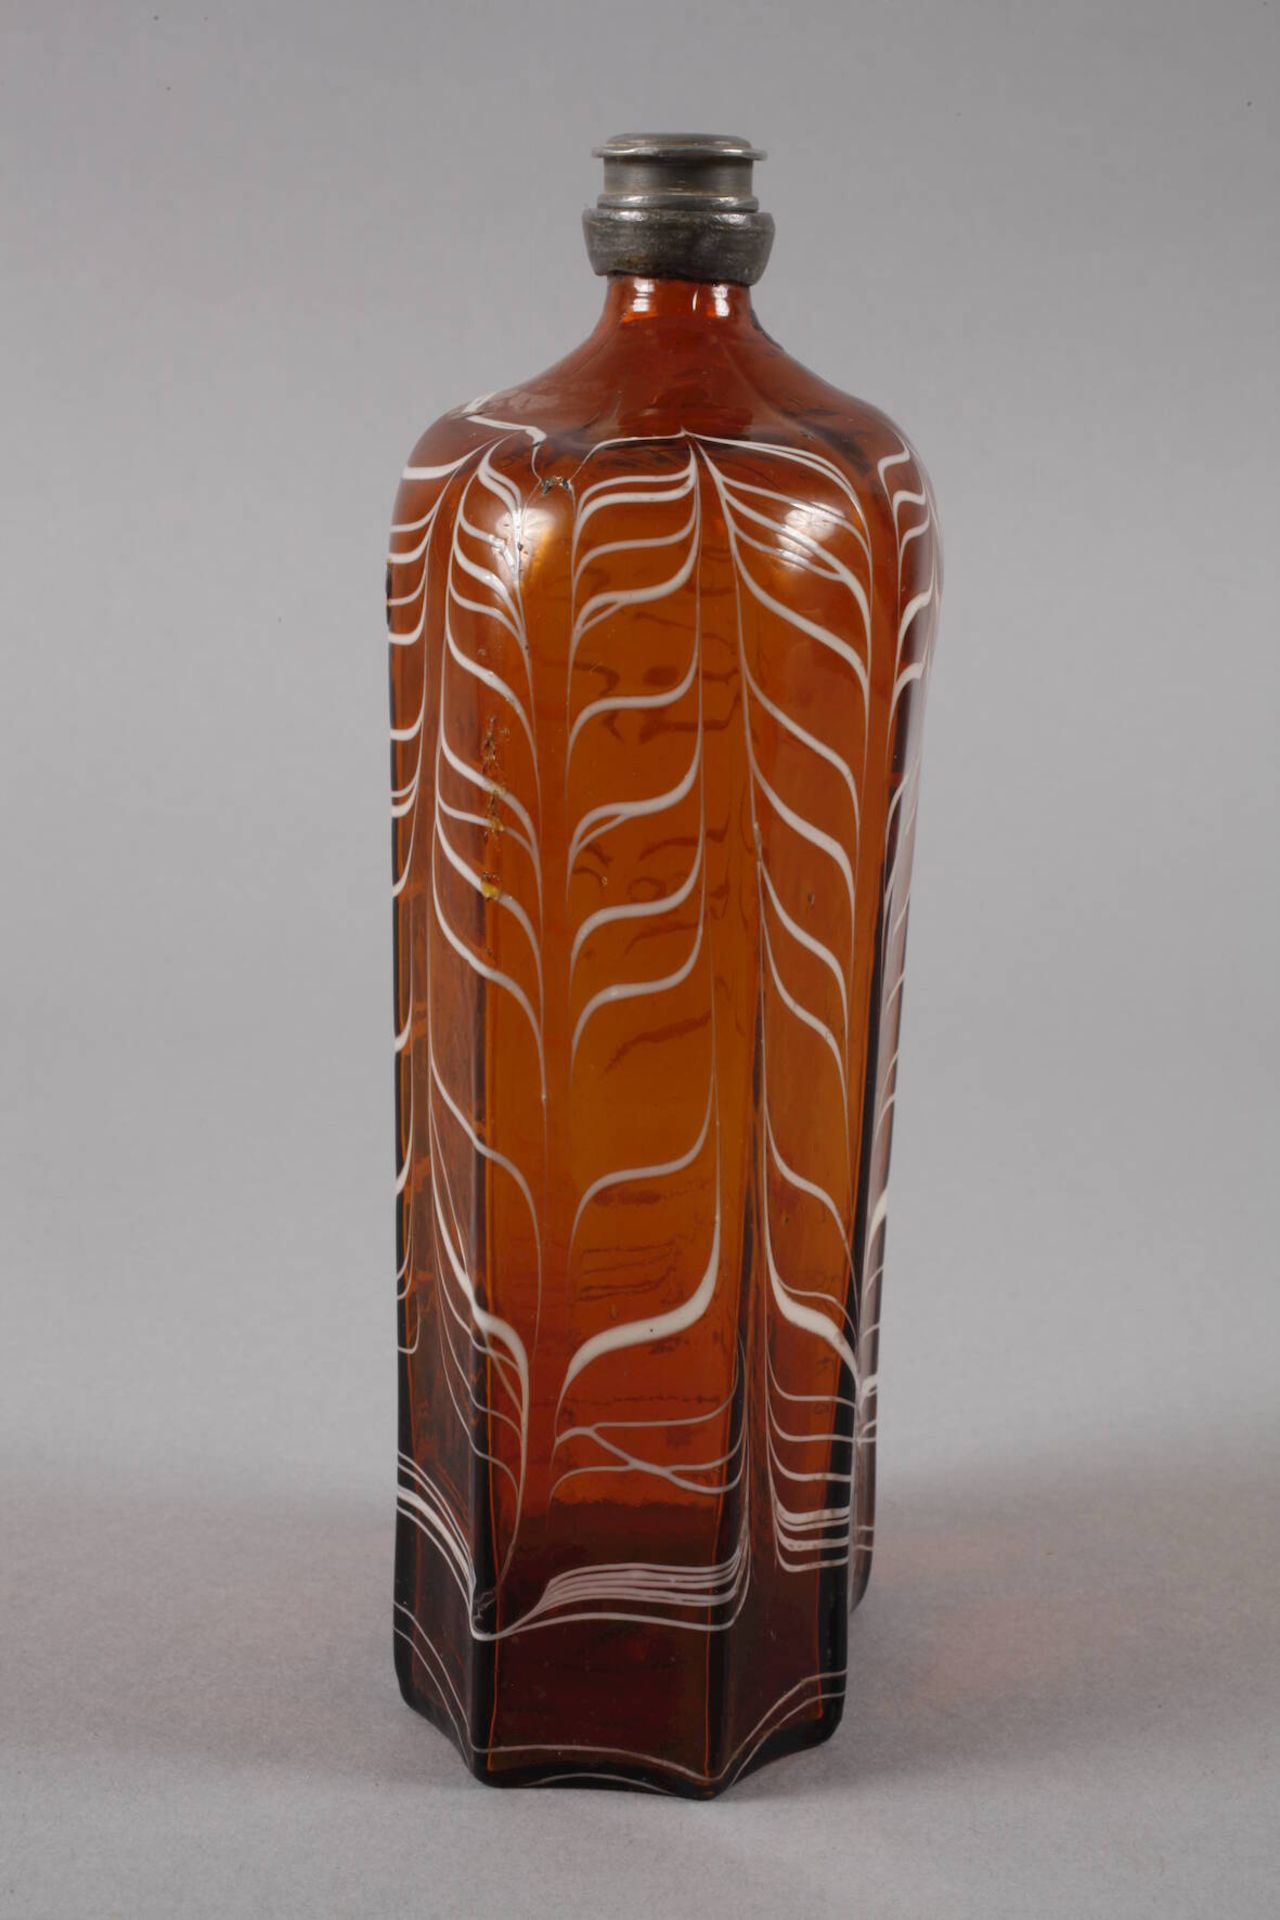 Alpenländische Schnapsflasche18. Jh., honigbraunes Glas, blasiger Abriss, hexagonal facettiert, - Bild 5 aus 6